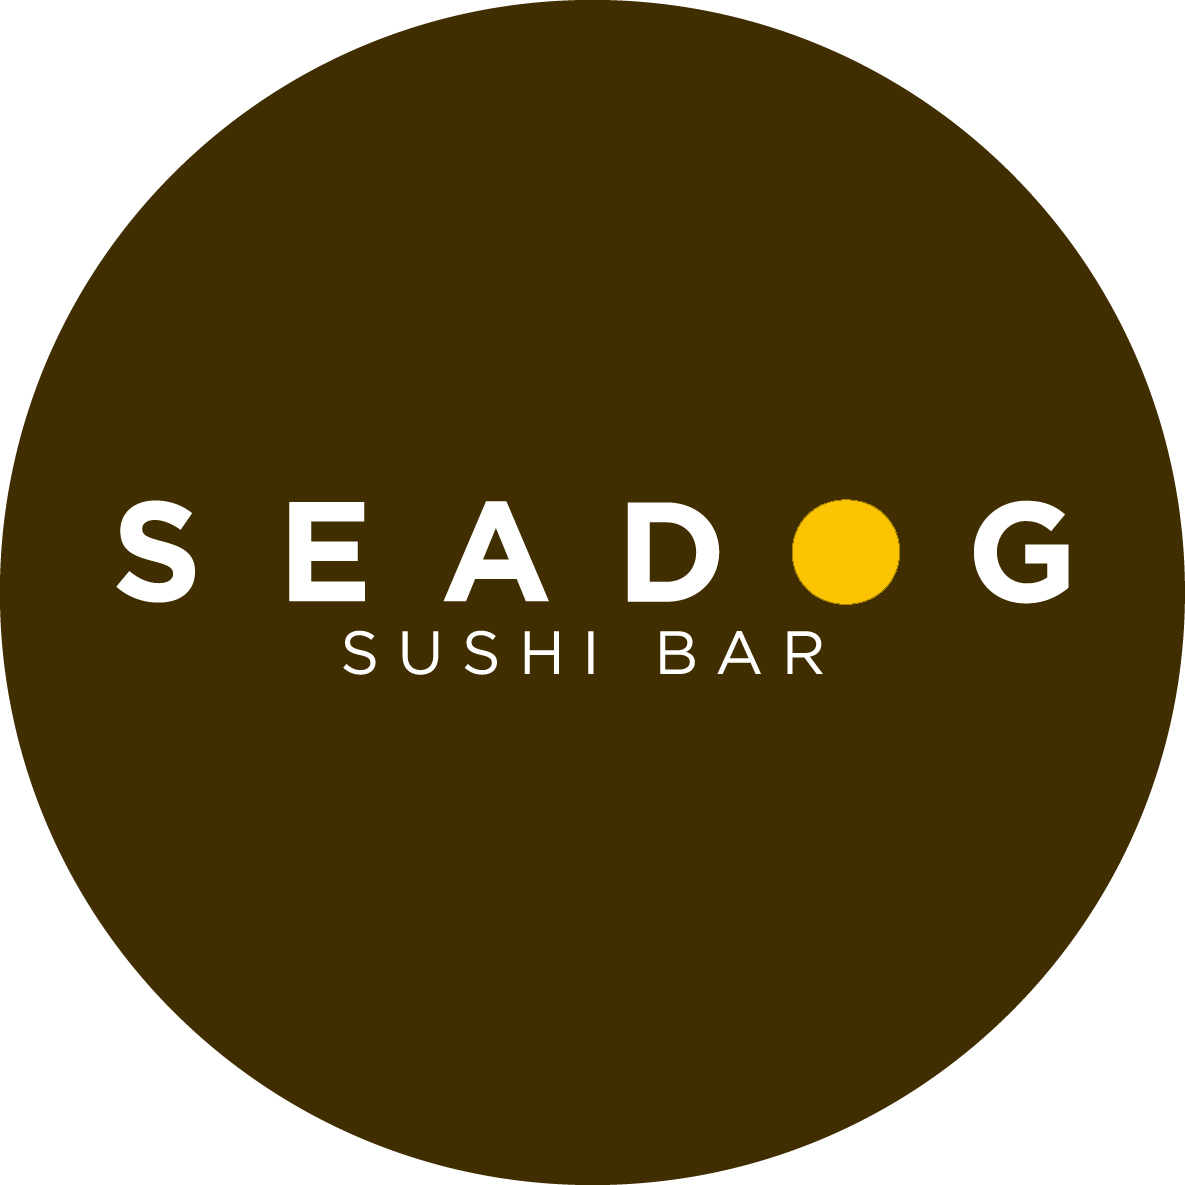 Seadog sushi bar - Chicago, IL 60642 - (773)235-8100 | ShowMeLocal.com